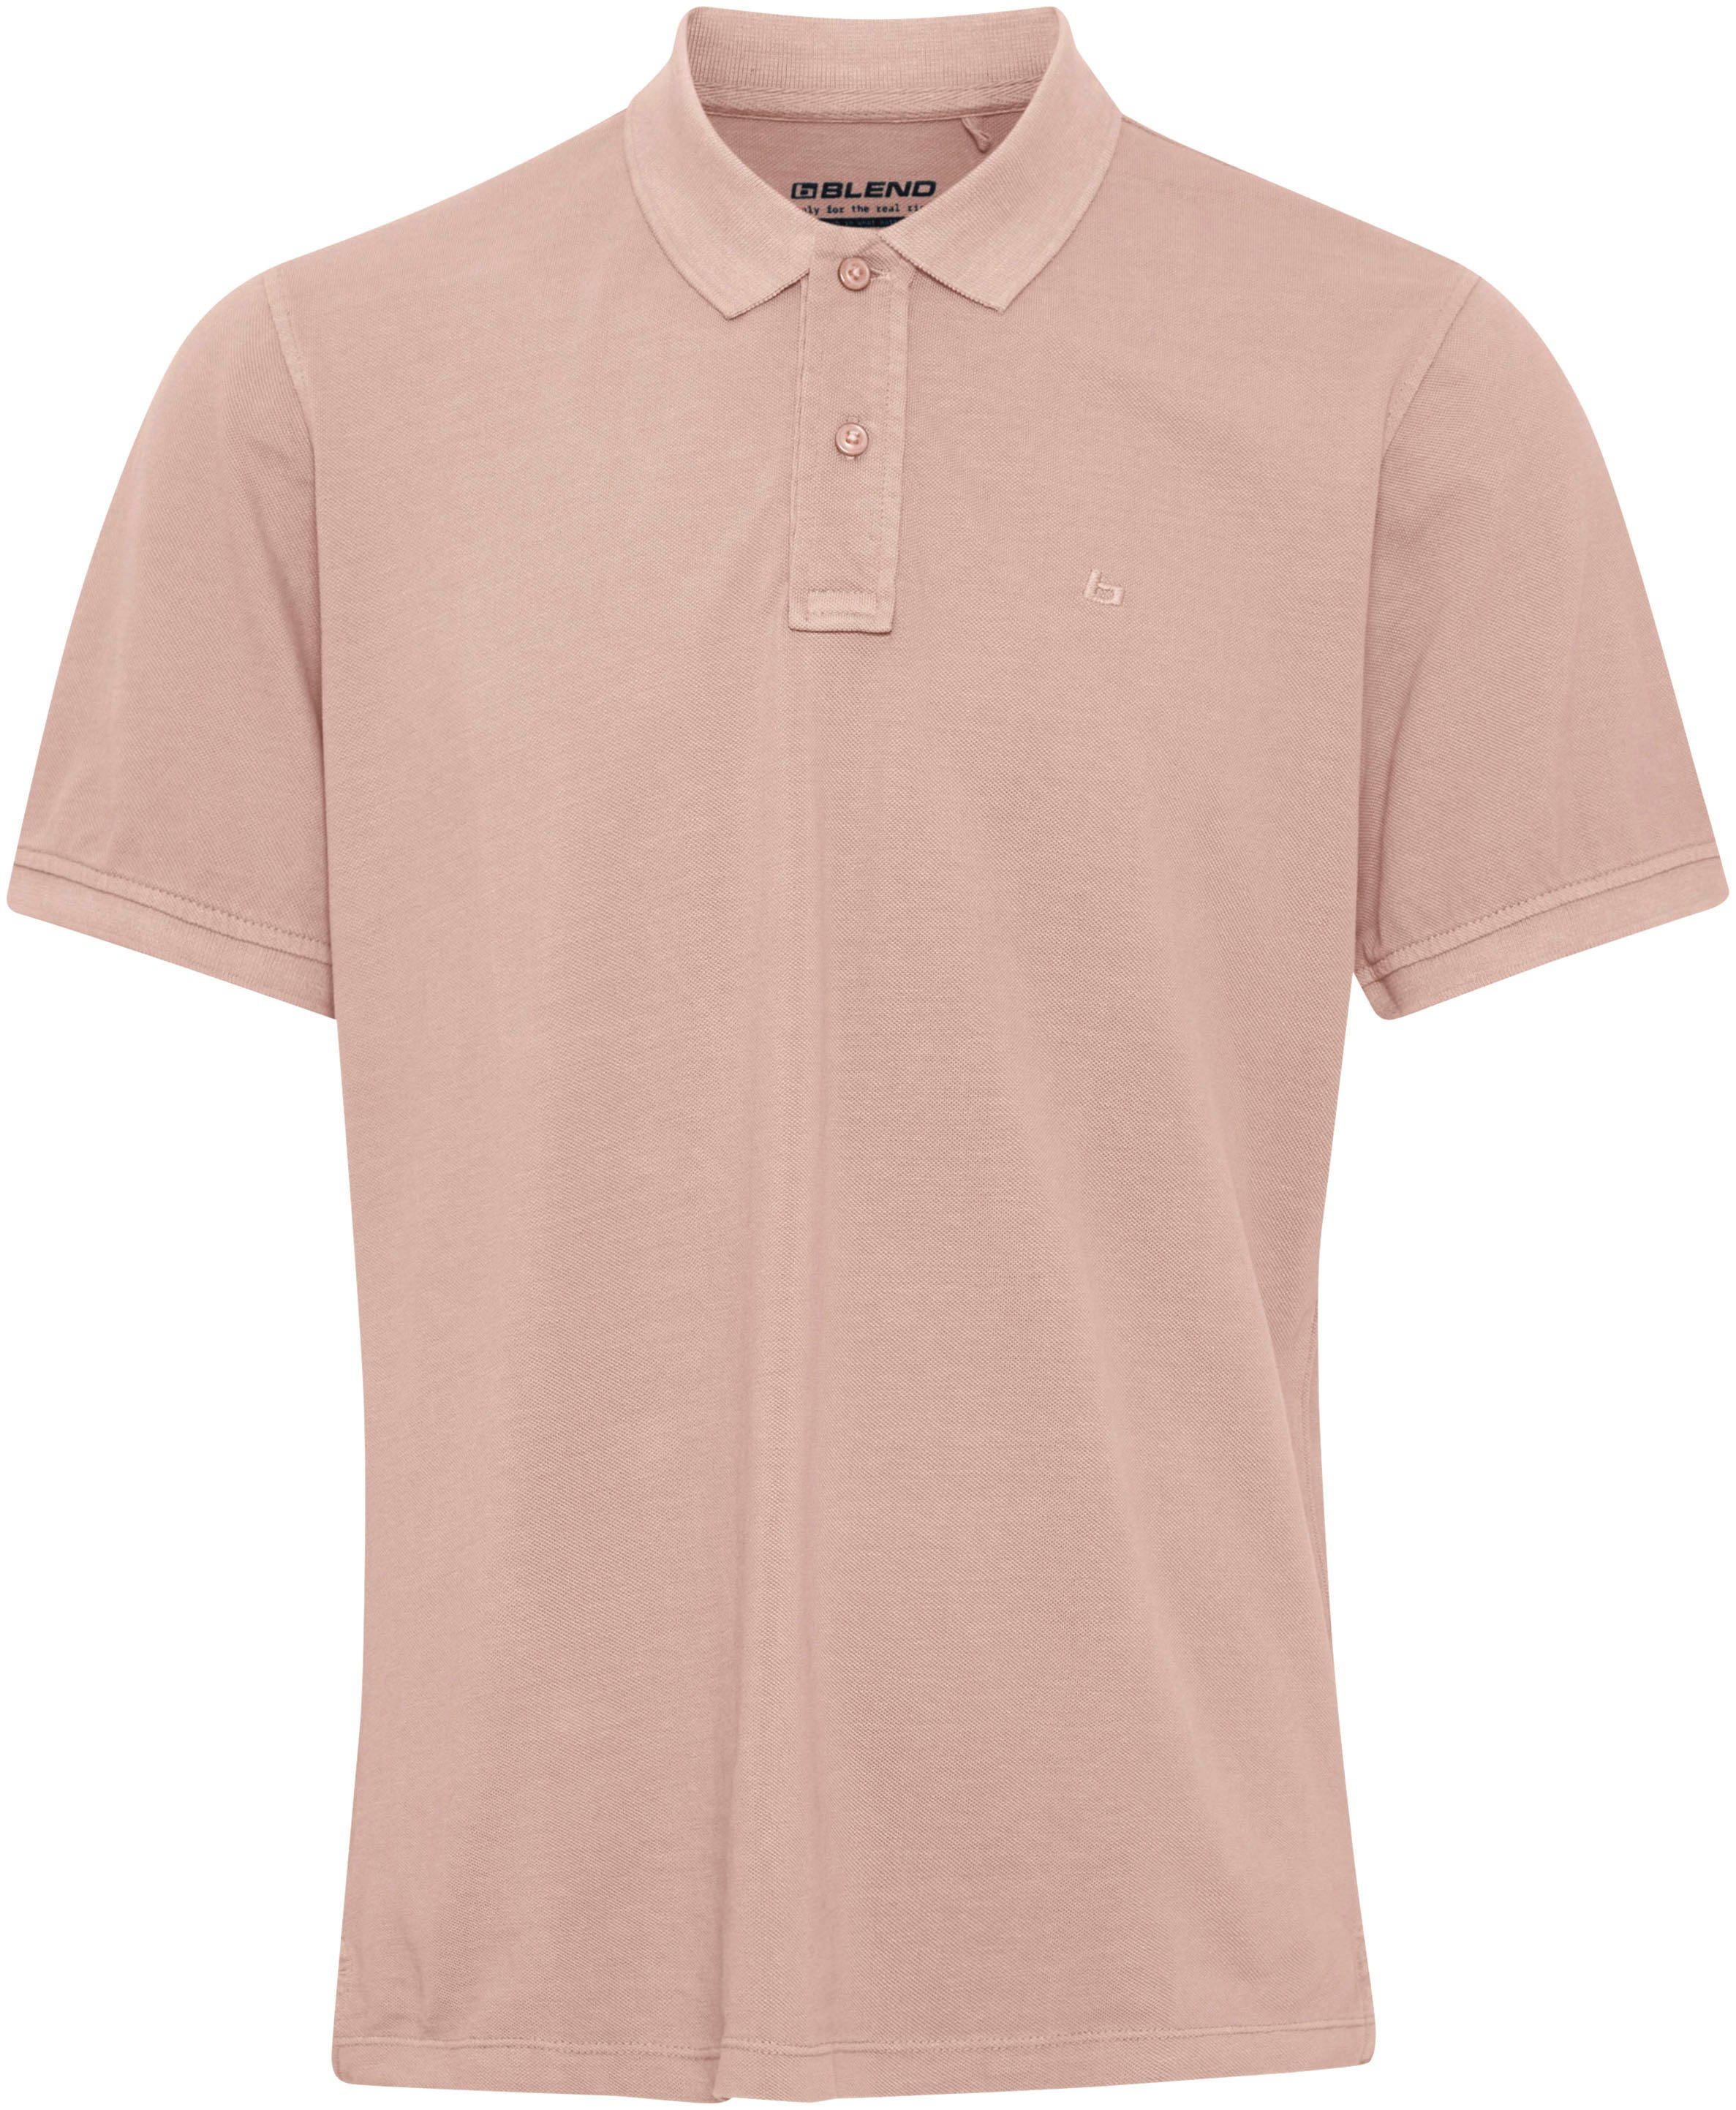 Blend Poloshirt BL-Poloshirt pink | 